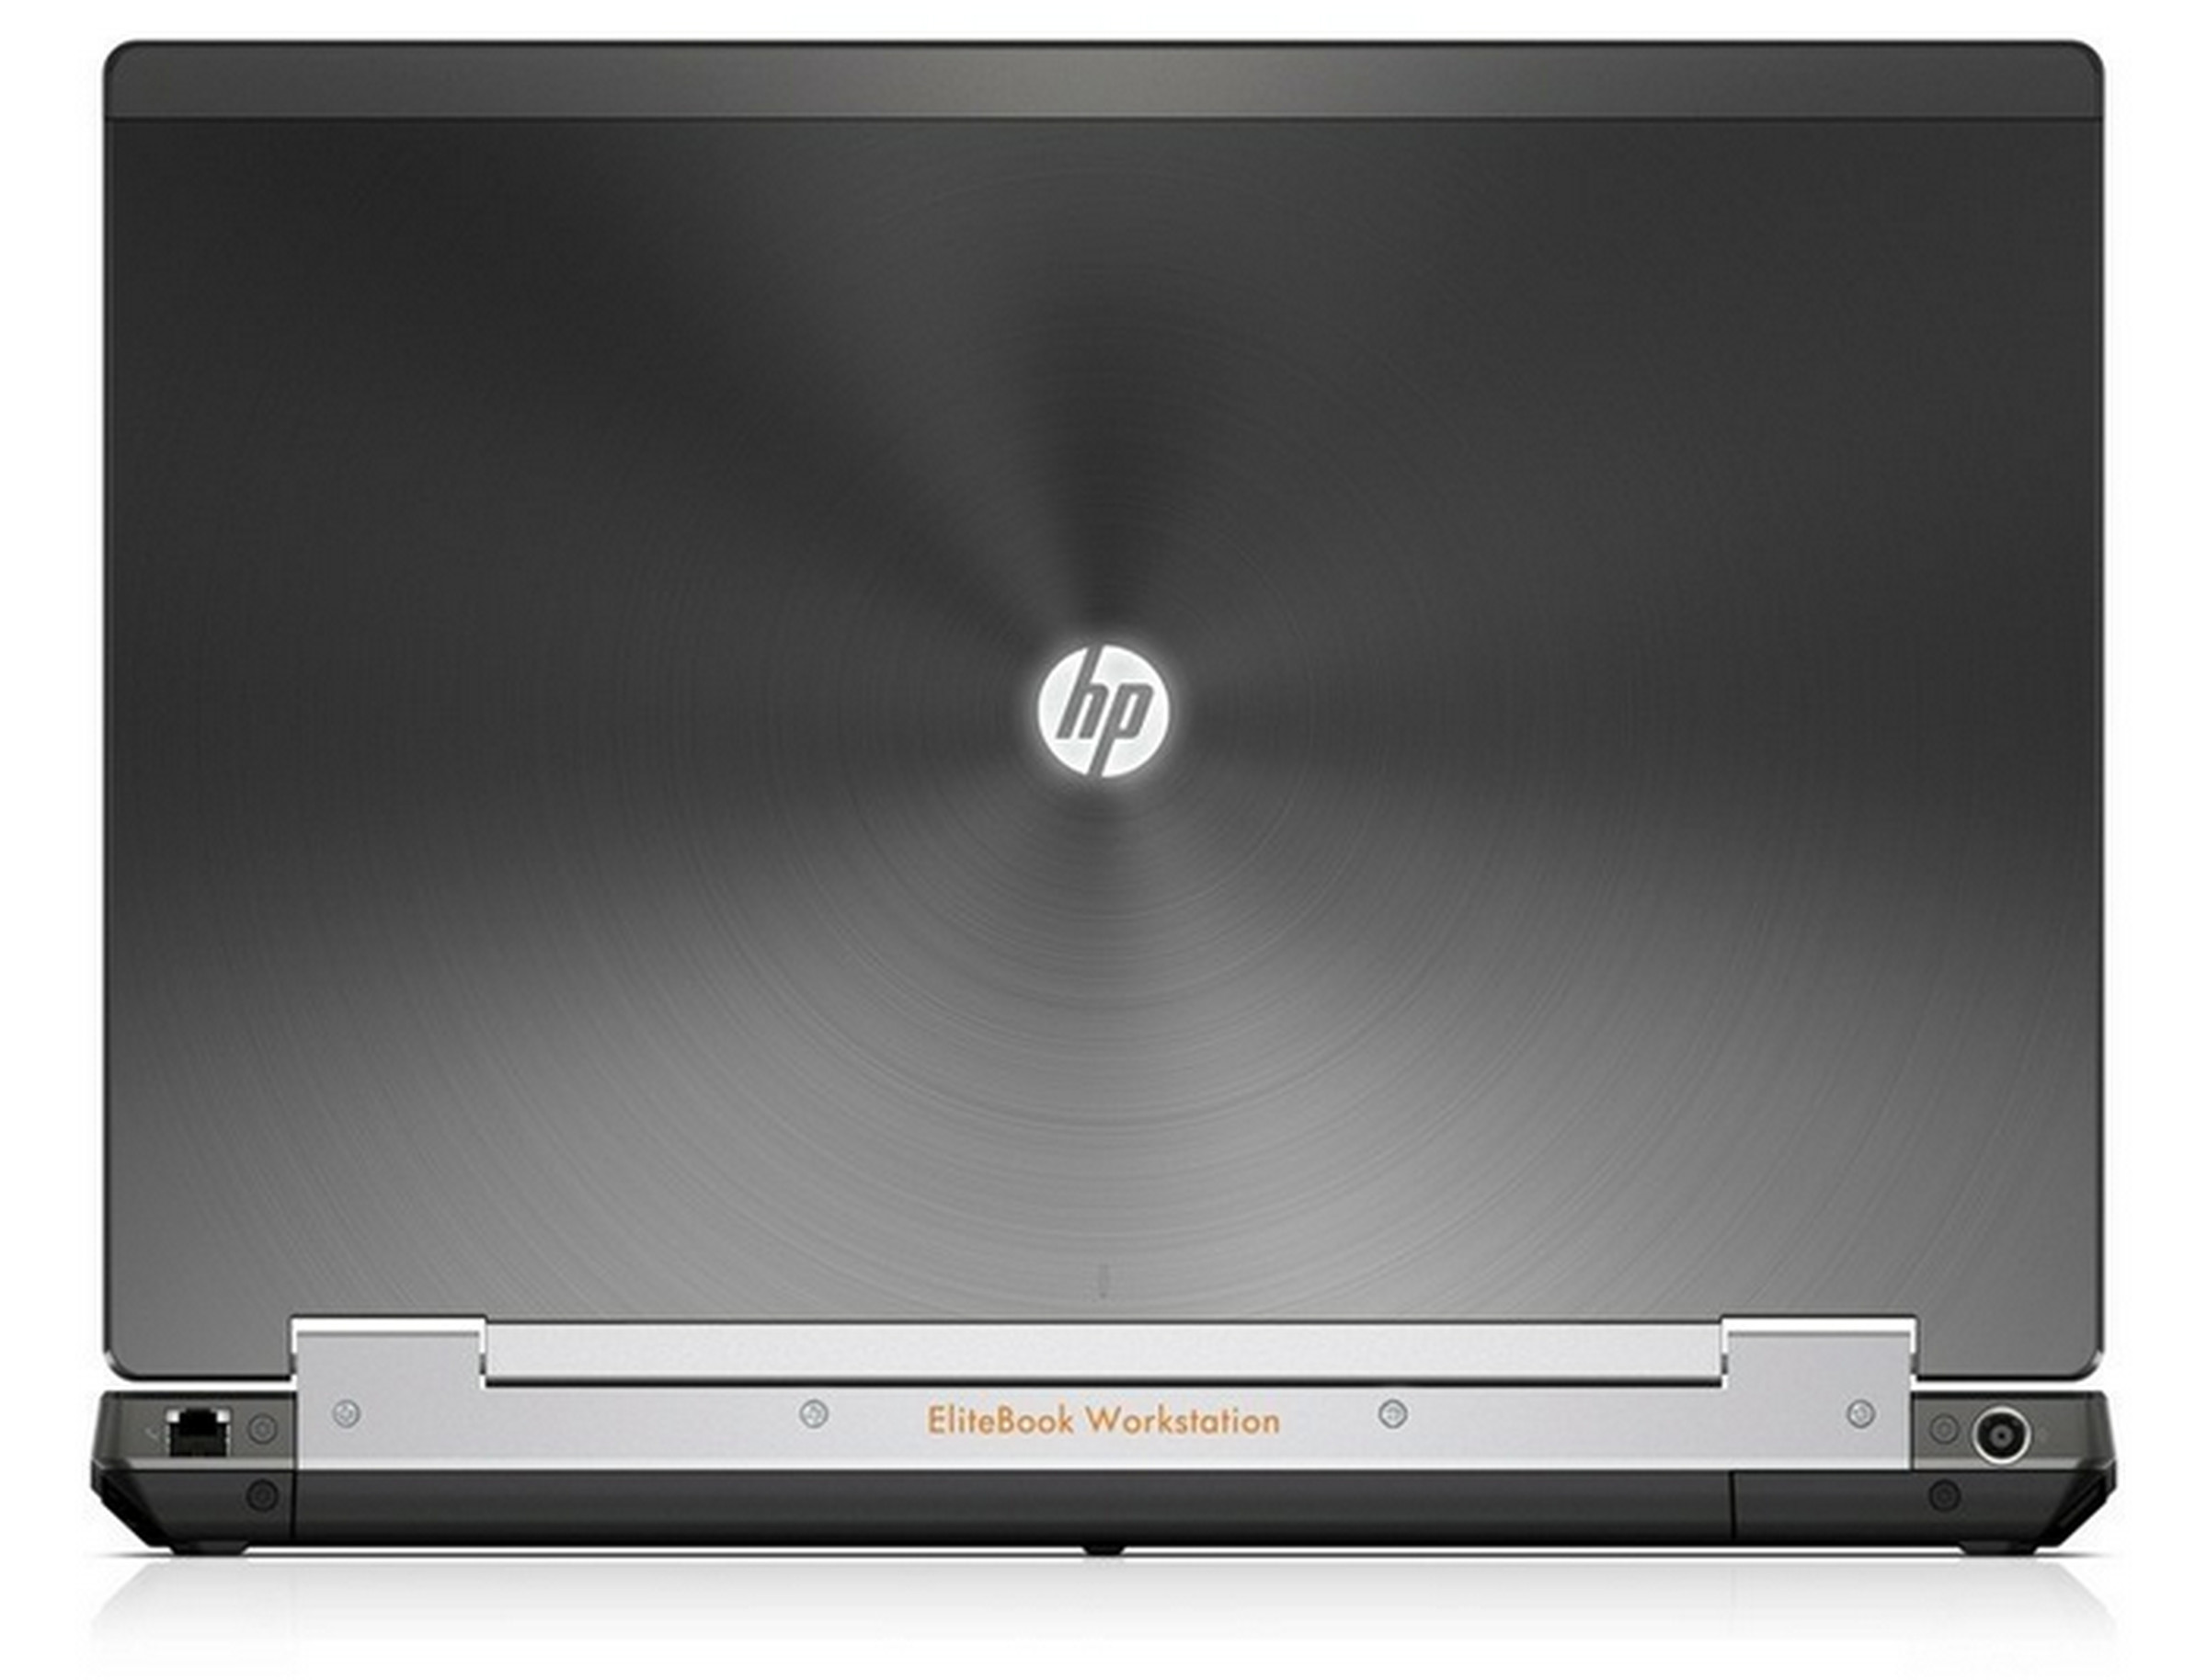 HP updates EliteBook W-series